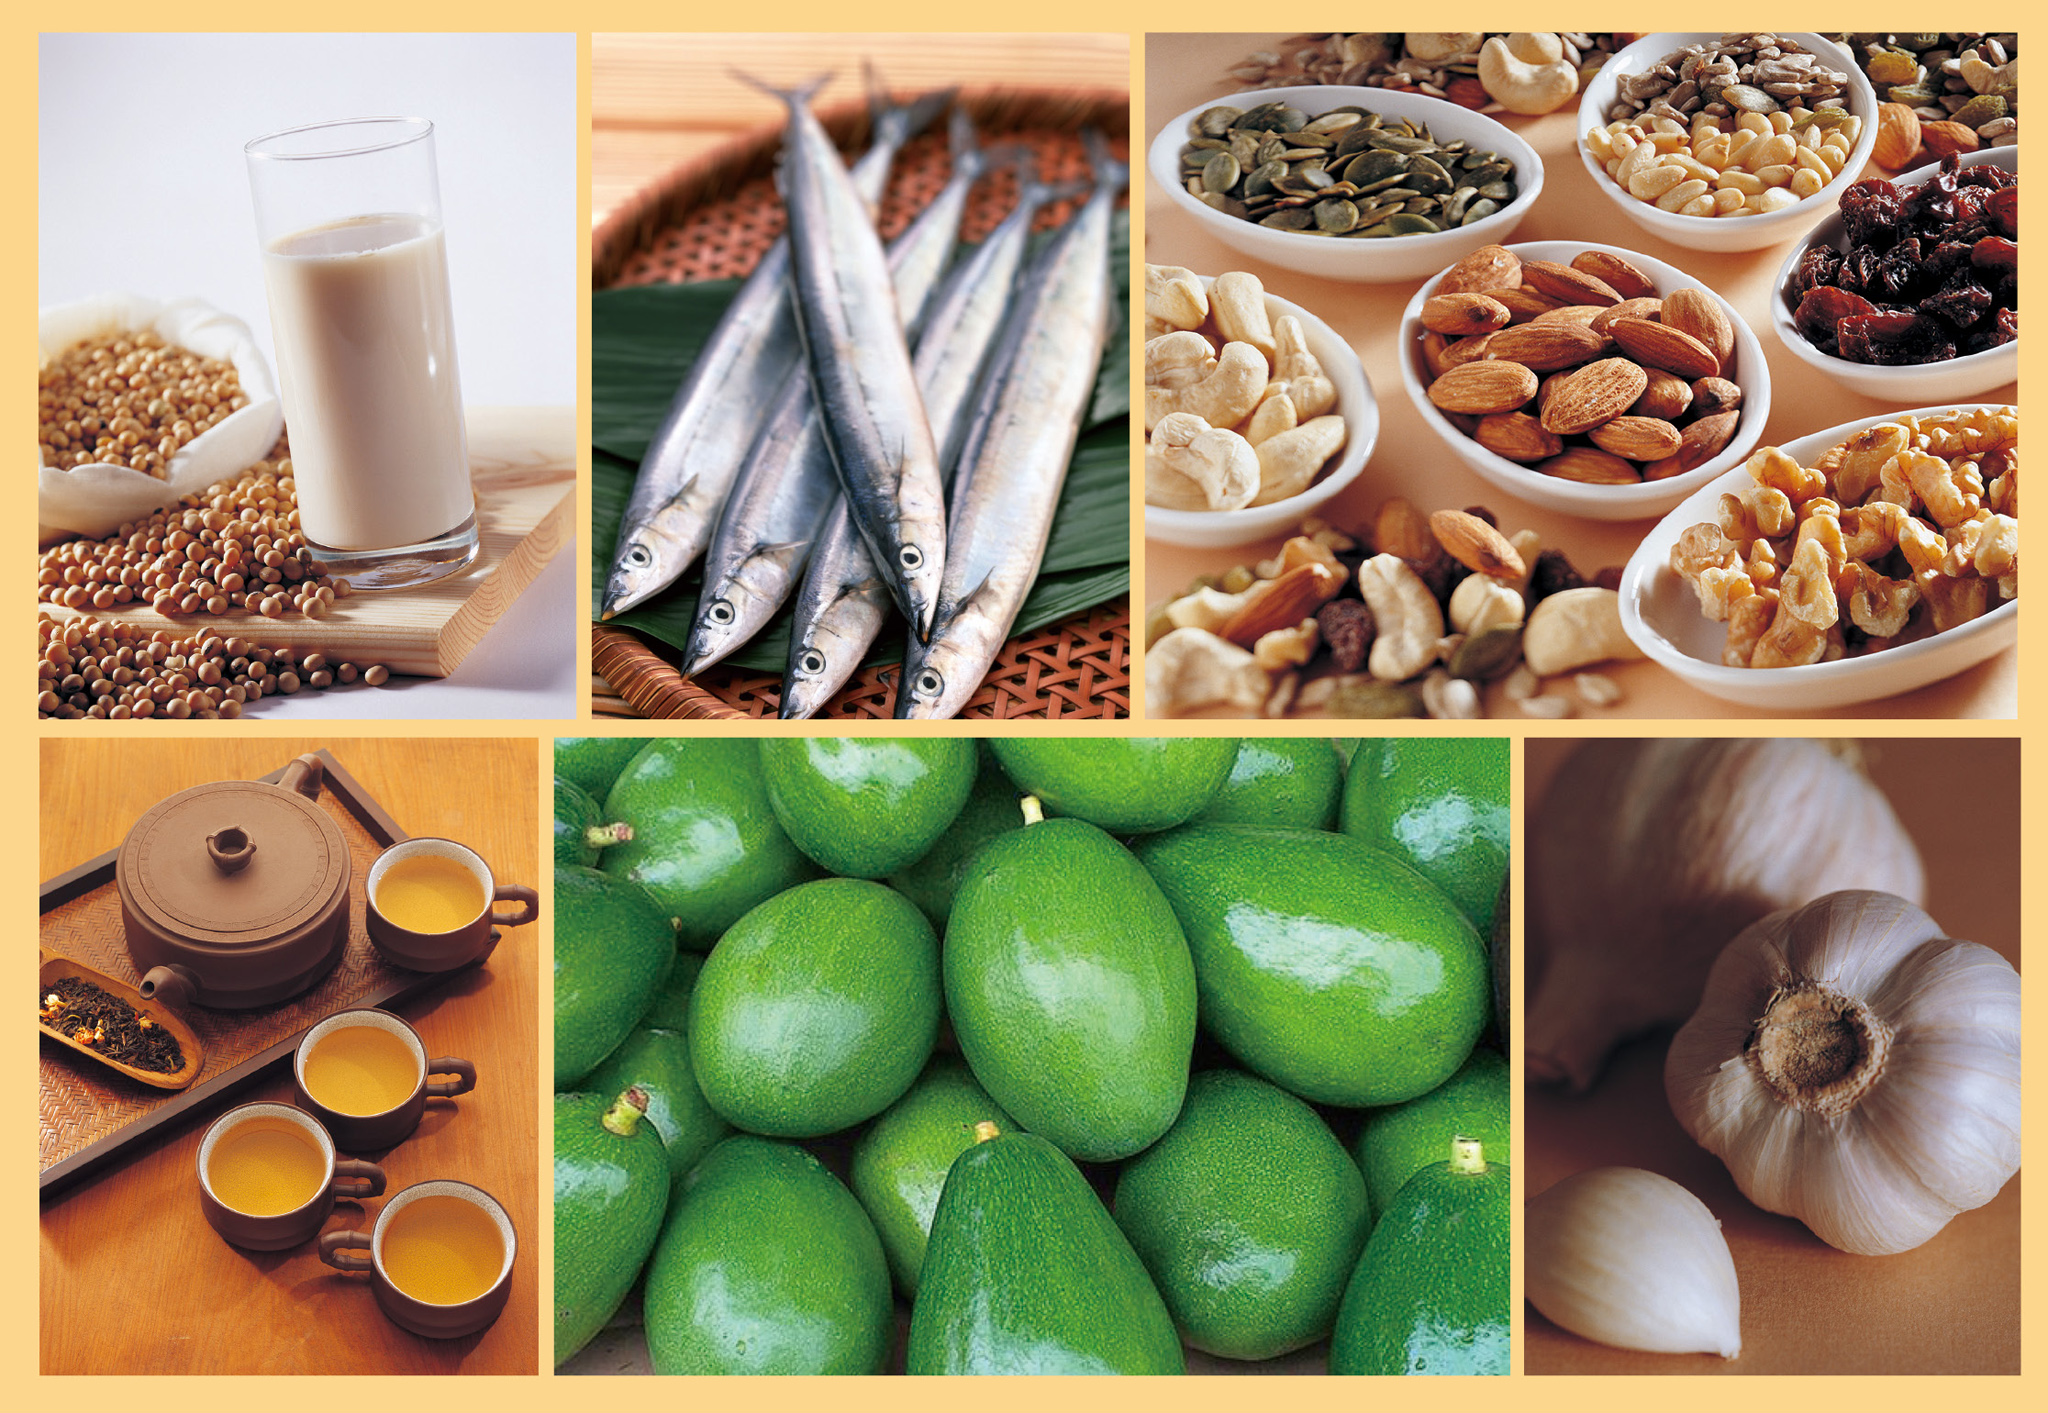 有效降低膽固醇之六大好食：黃豆製品、魚類、綜合堅果、茶、酪梨、大蒜。